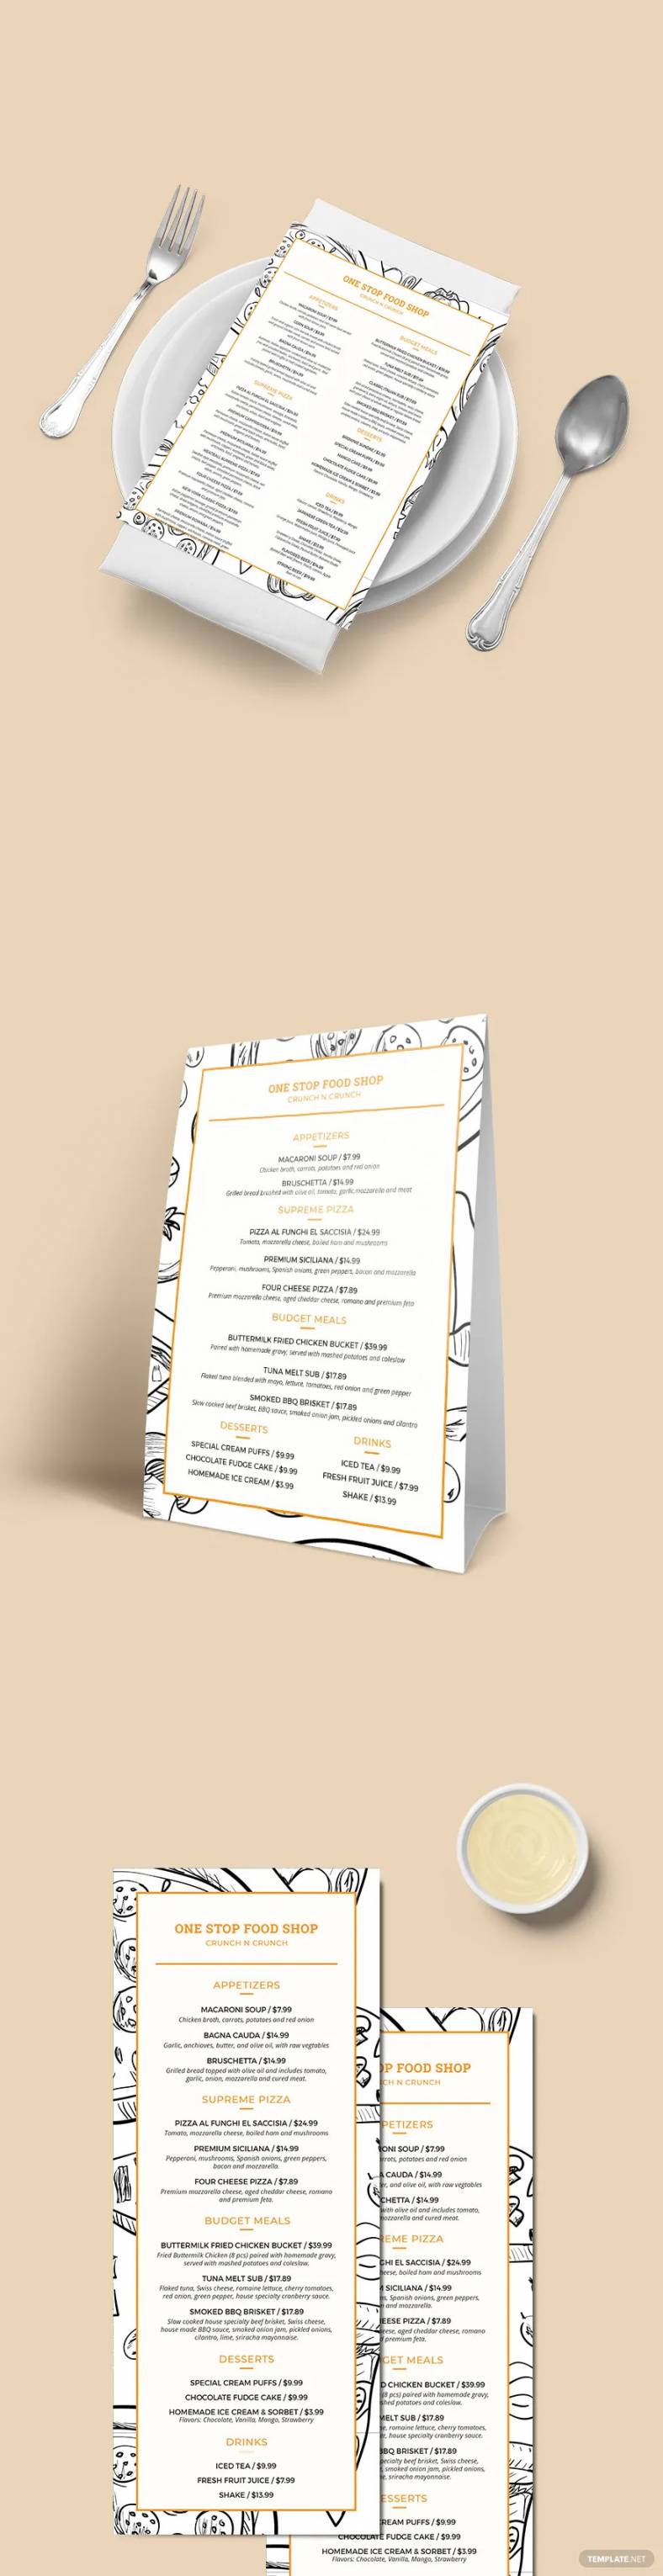 food-menus-788x3062